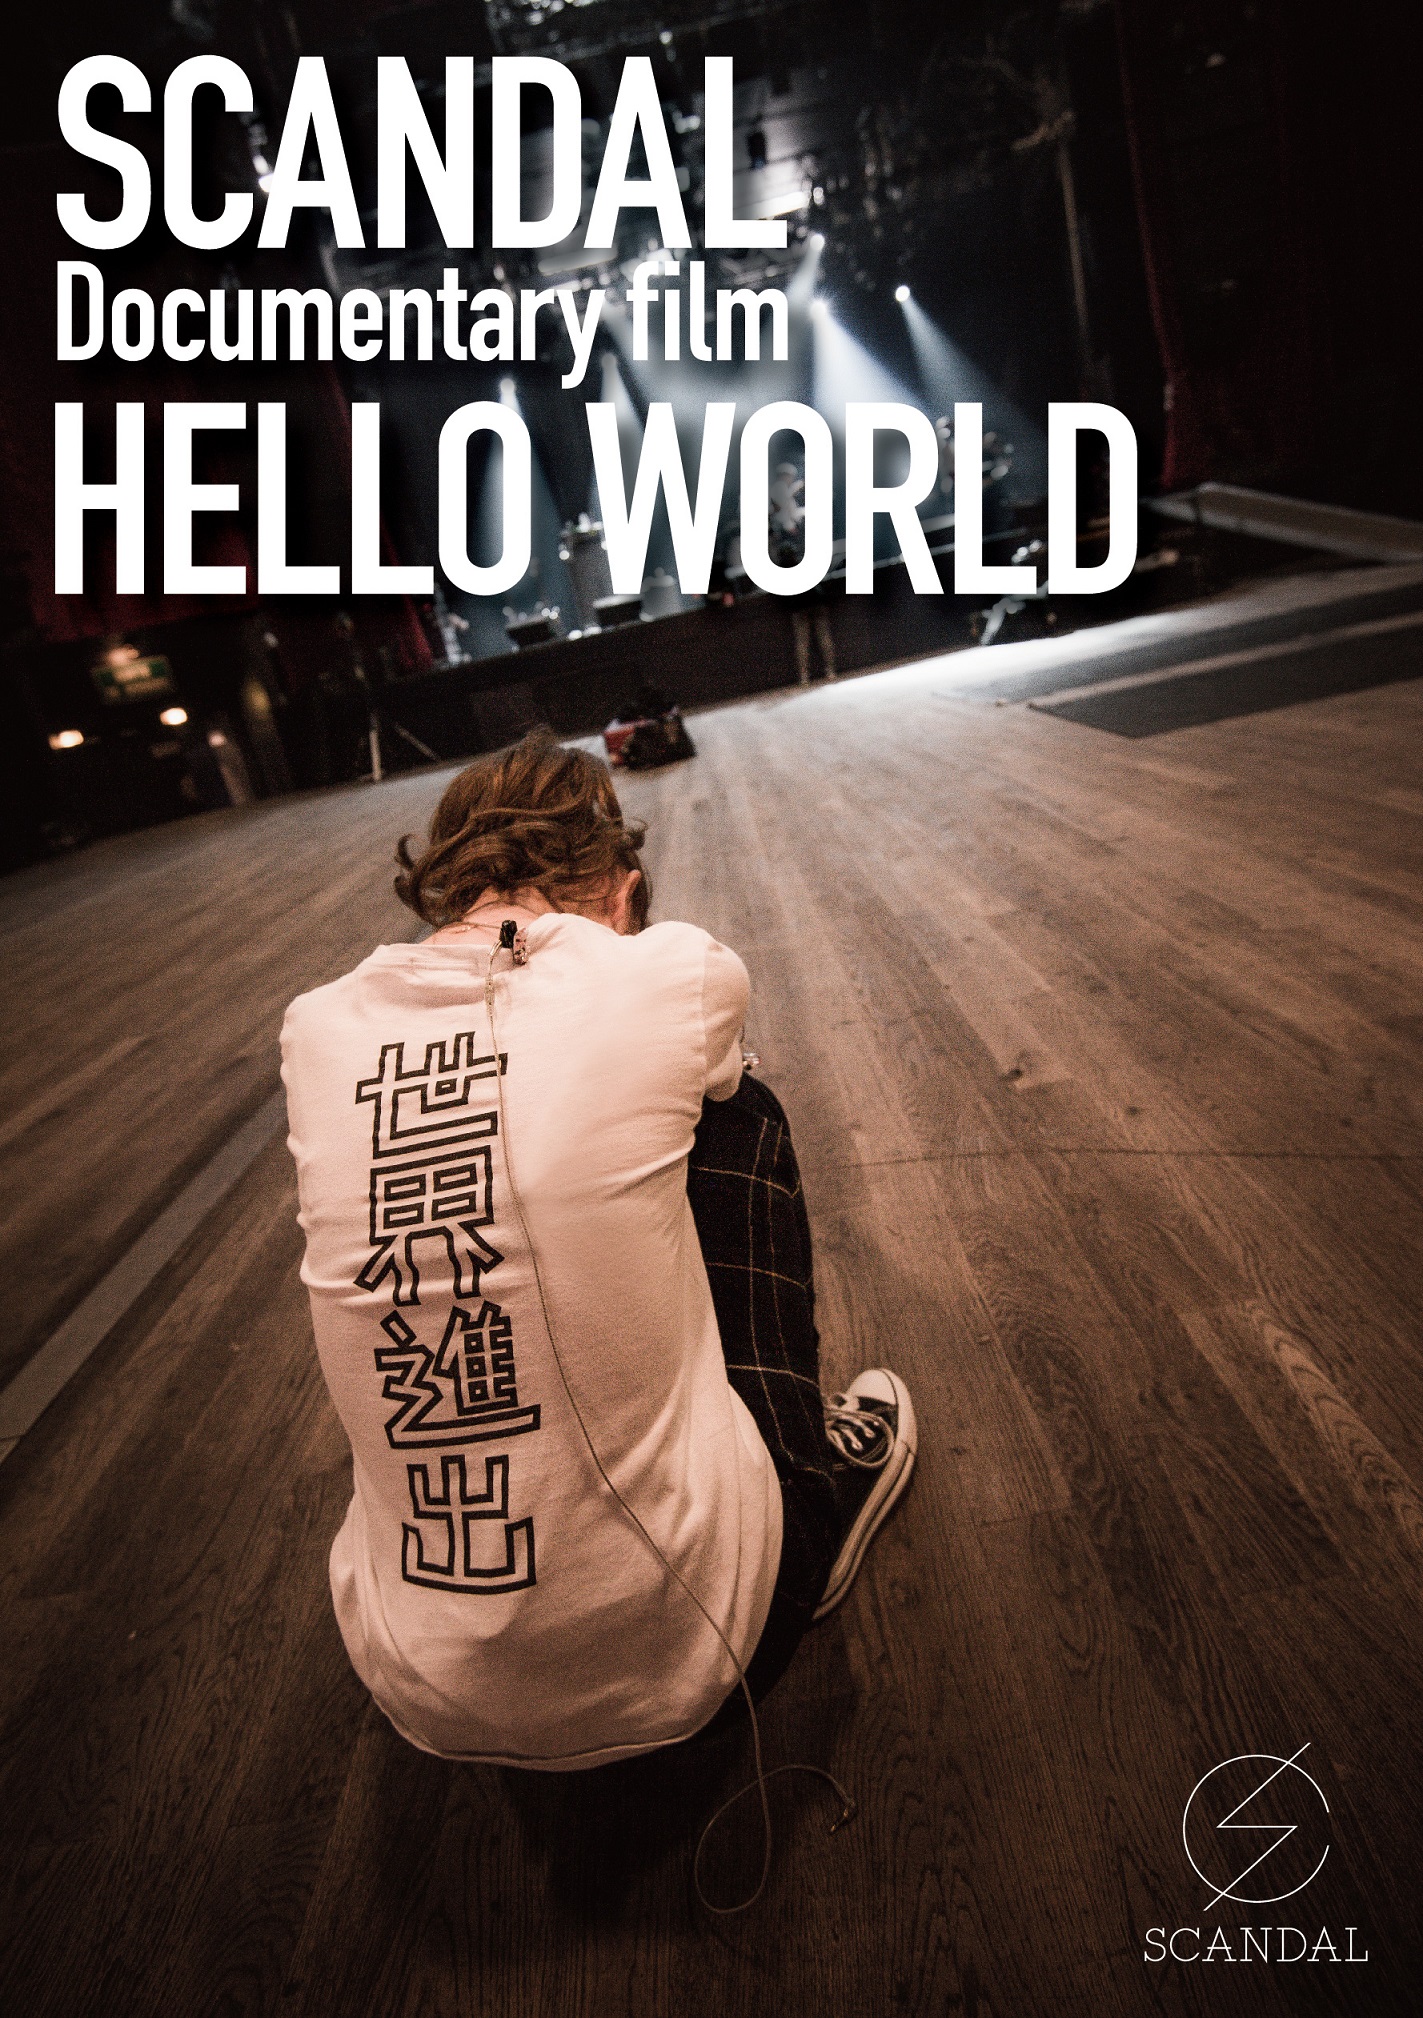 SCANDAL “Documentary film「HELLO WORLD」” SCANDAL-SCANDAL-Documentary-film-HELLO-WORLD-JK-DVD-Blu-ray-1